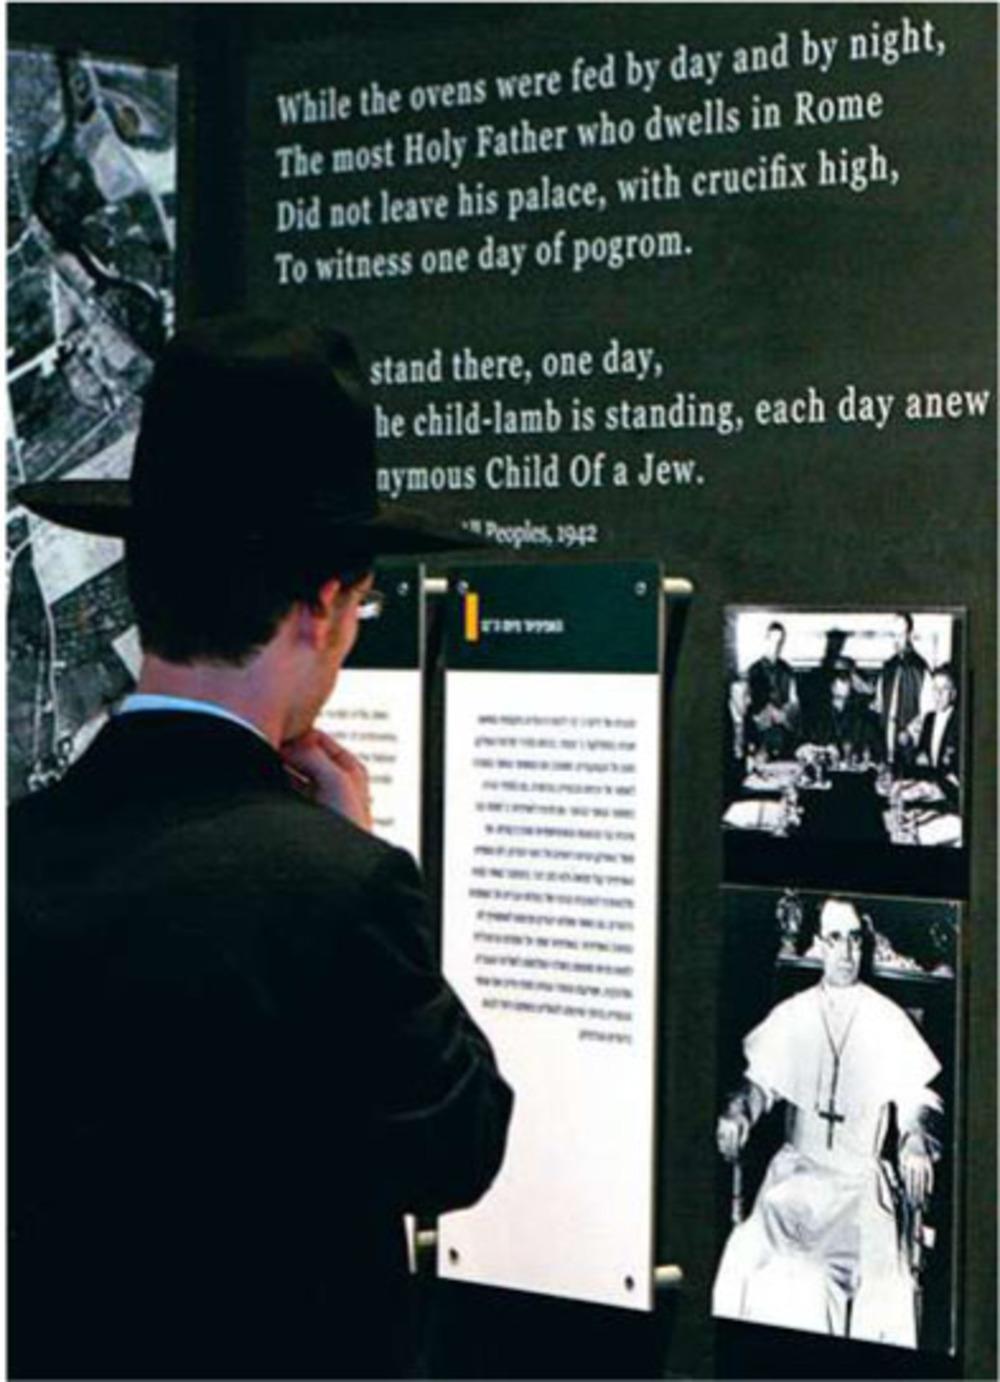 Yad Vashem, het gedenkteken voor de Shoah, met een foto van Pius XII en een bijschrift waarin hem wordt verweten dat hij er tijdens de Shoah het zwijgen toe deed.